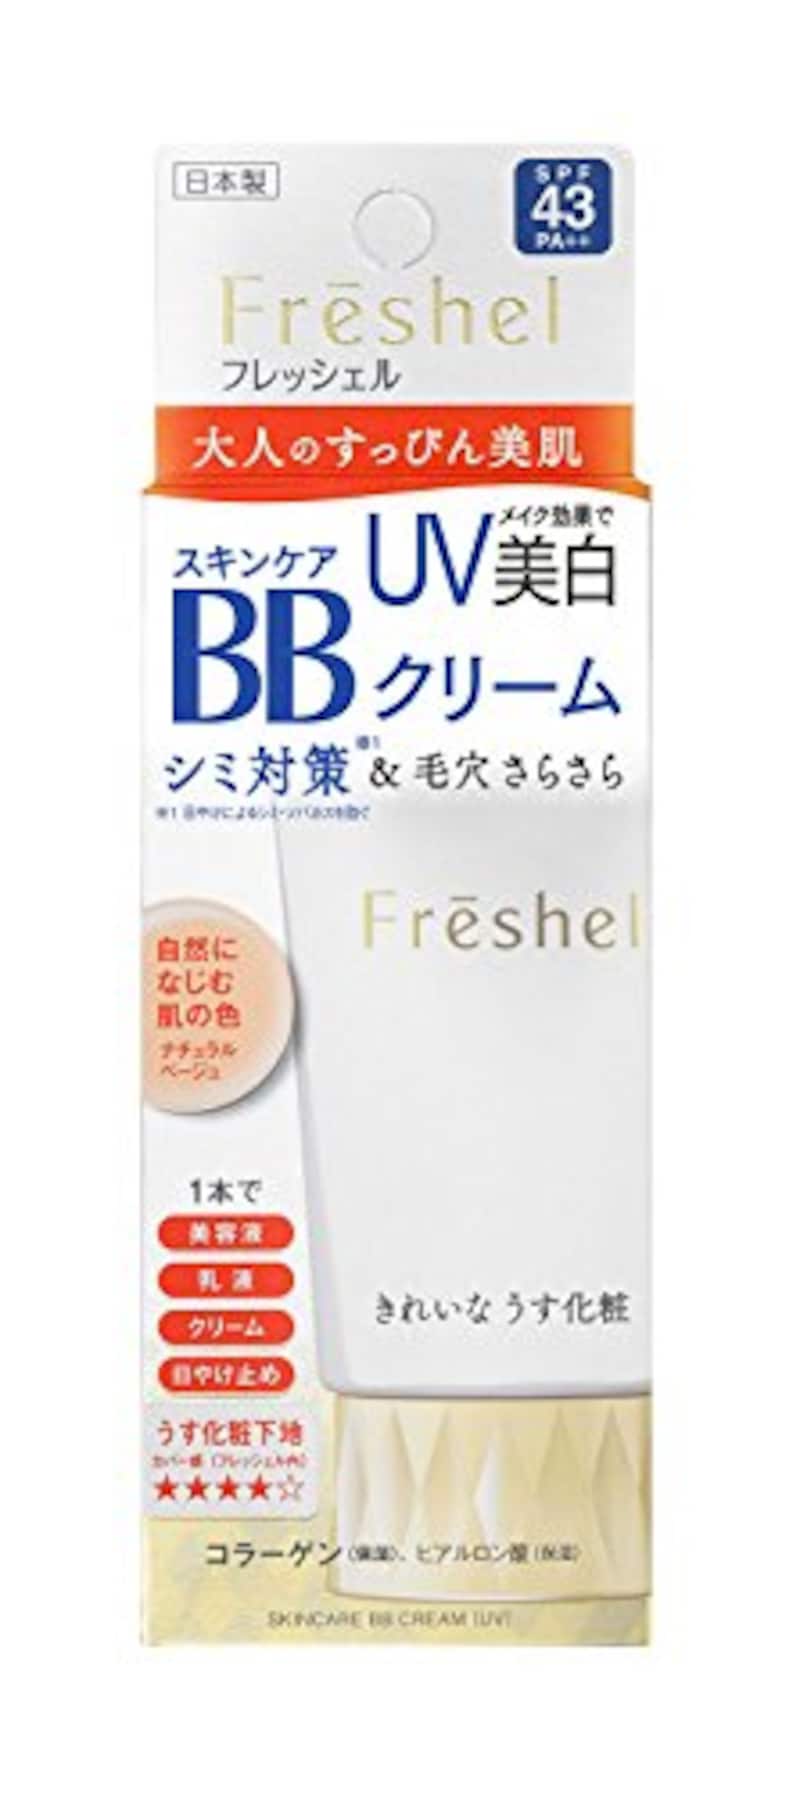 Freshel（フレッシェル）,BBクリーム スキンケアBBクリーム UV ナチュラルベージュ